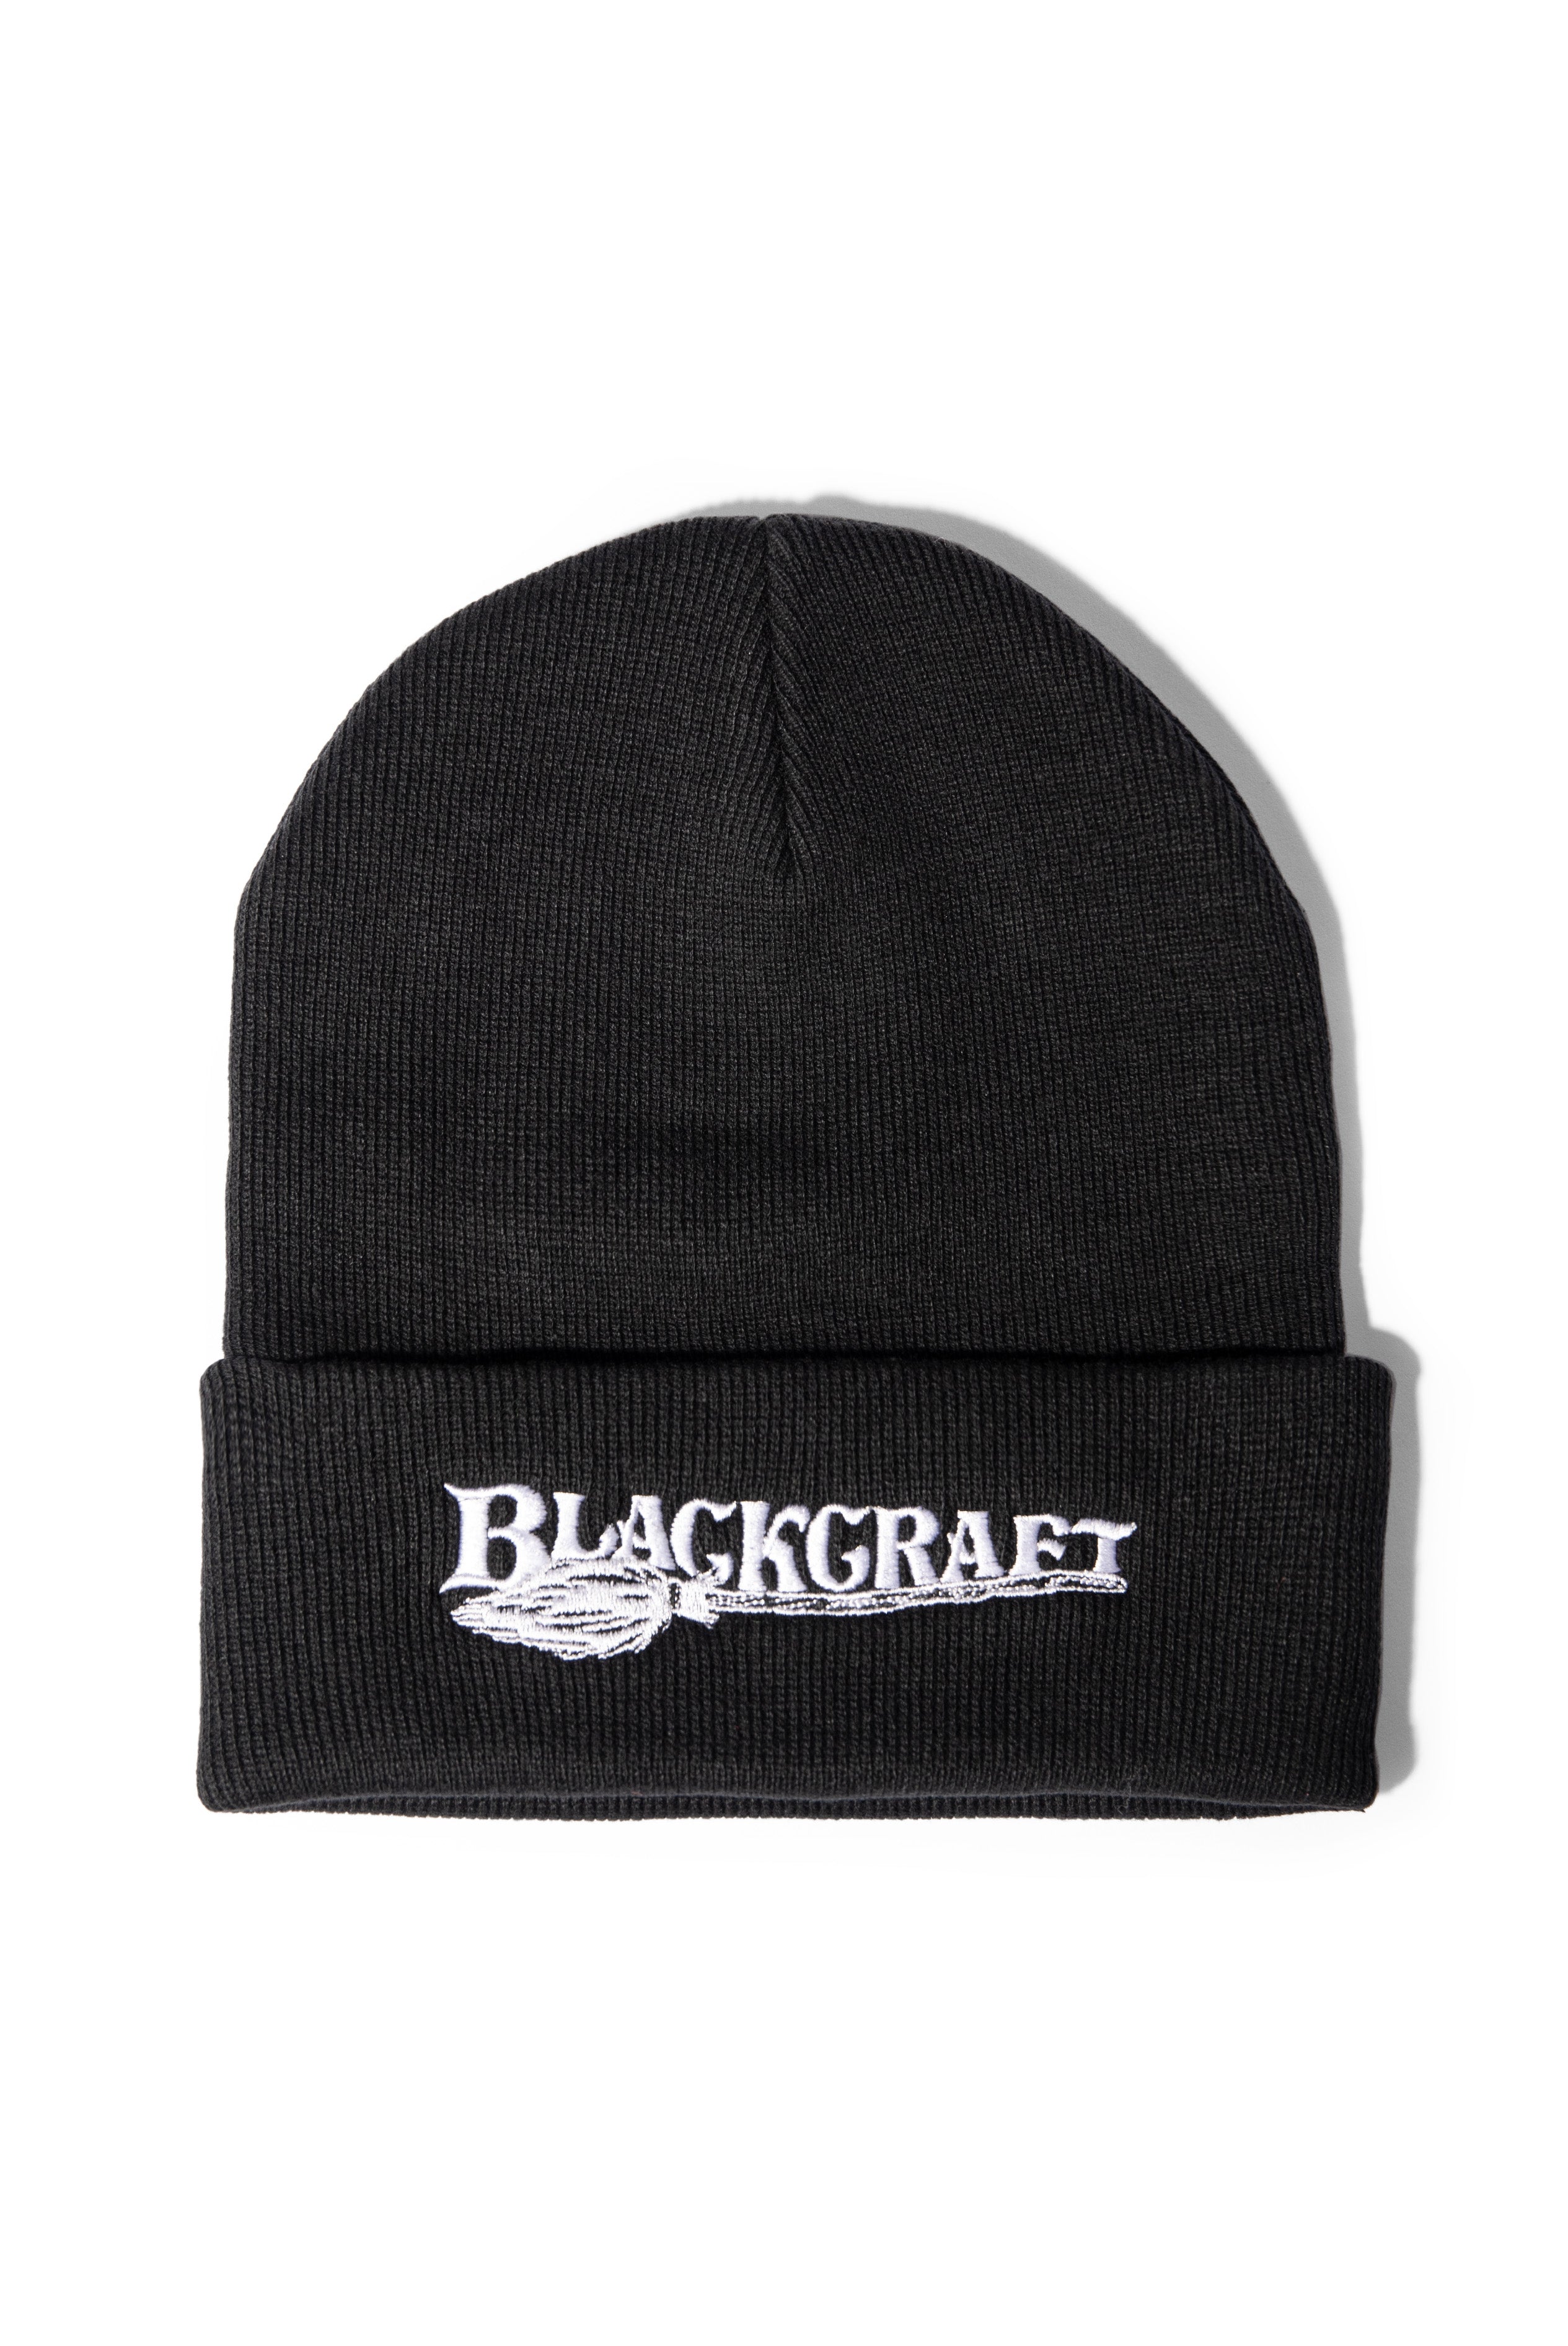 Blackcraft Broom Logo - Beanie – Blackcraft Cult